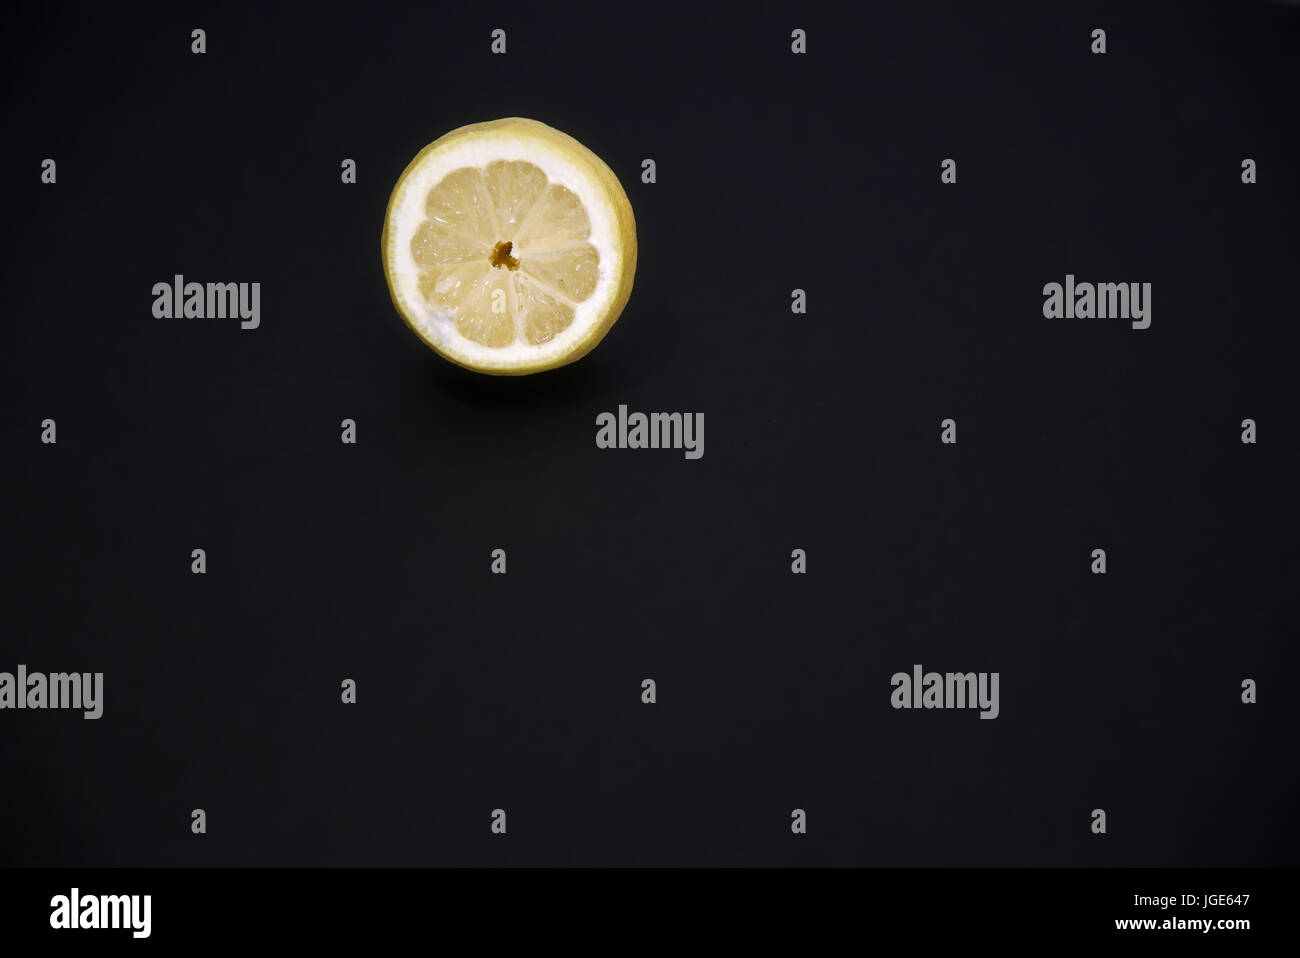 Zitrone-Stock-Fotografie. Zitrone mit einem dunklen Hintergrund. Stockfoto